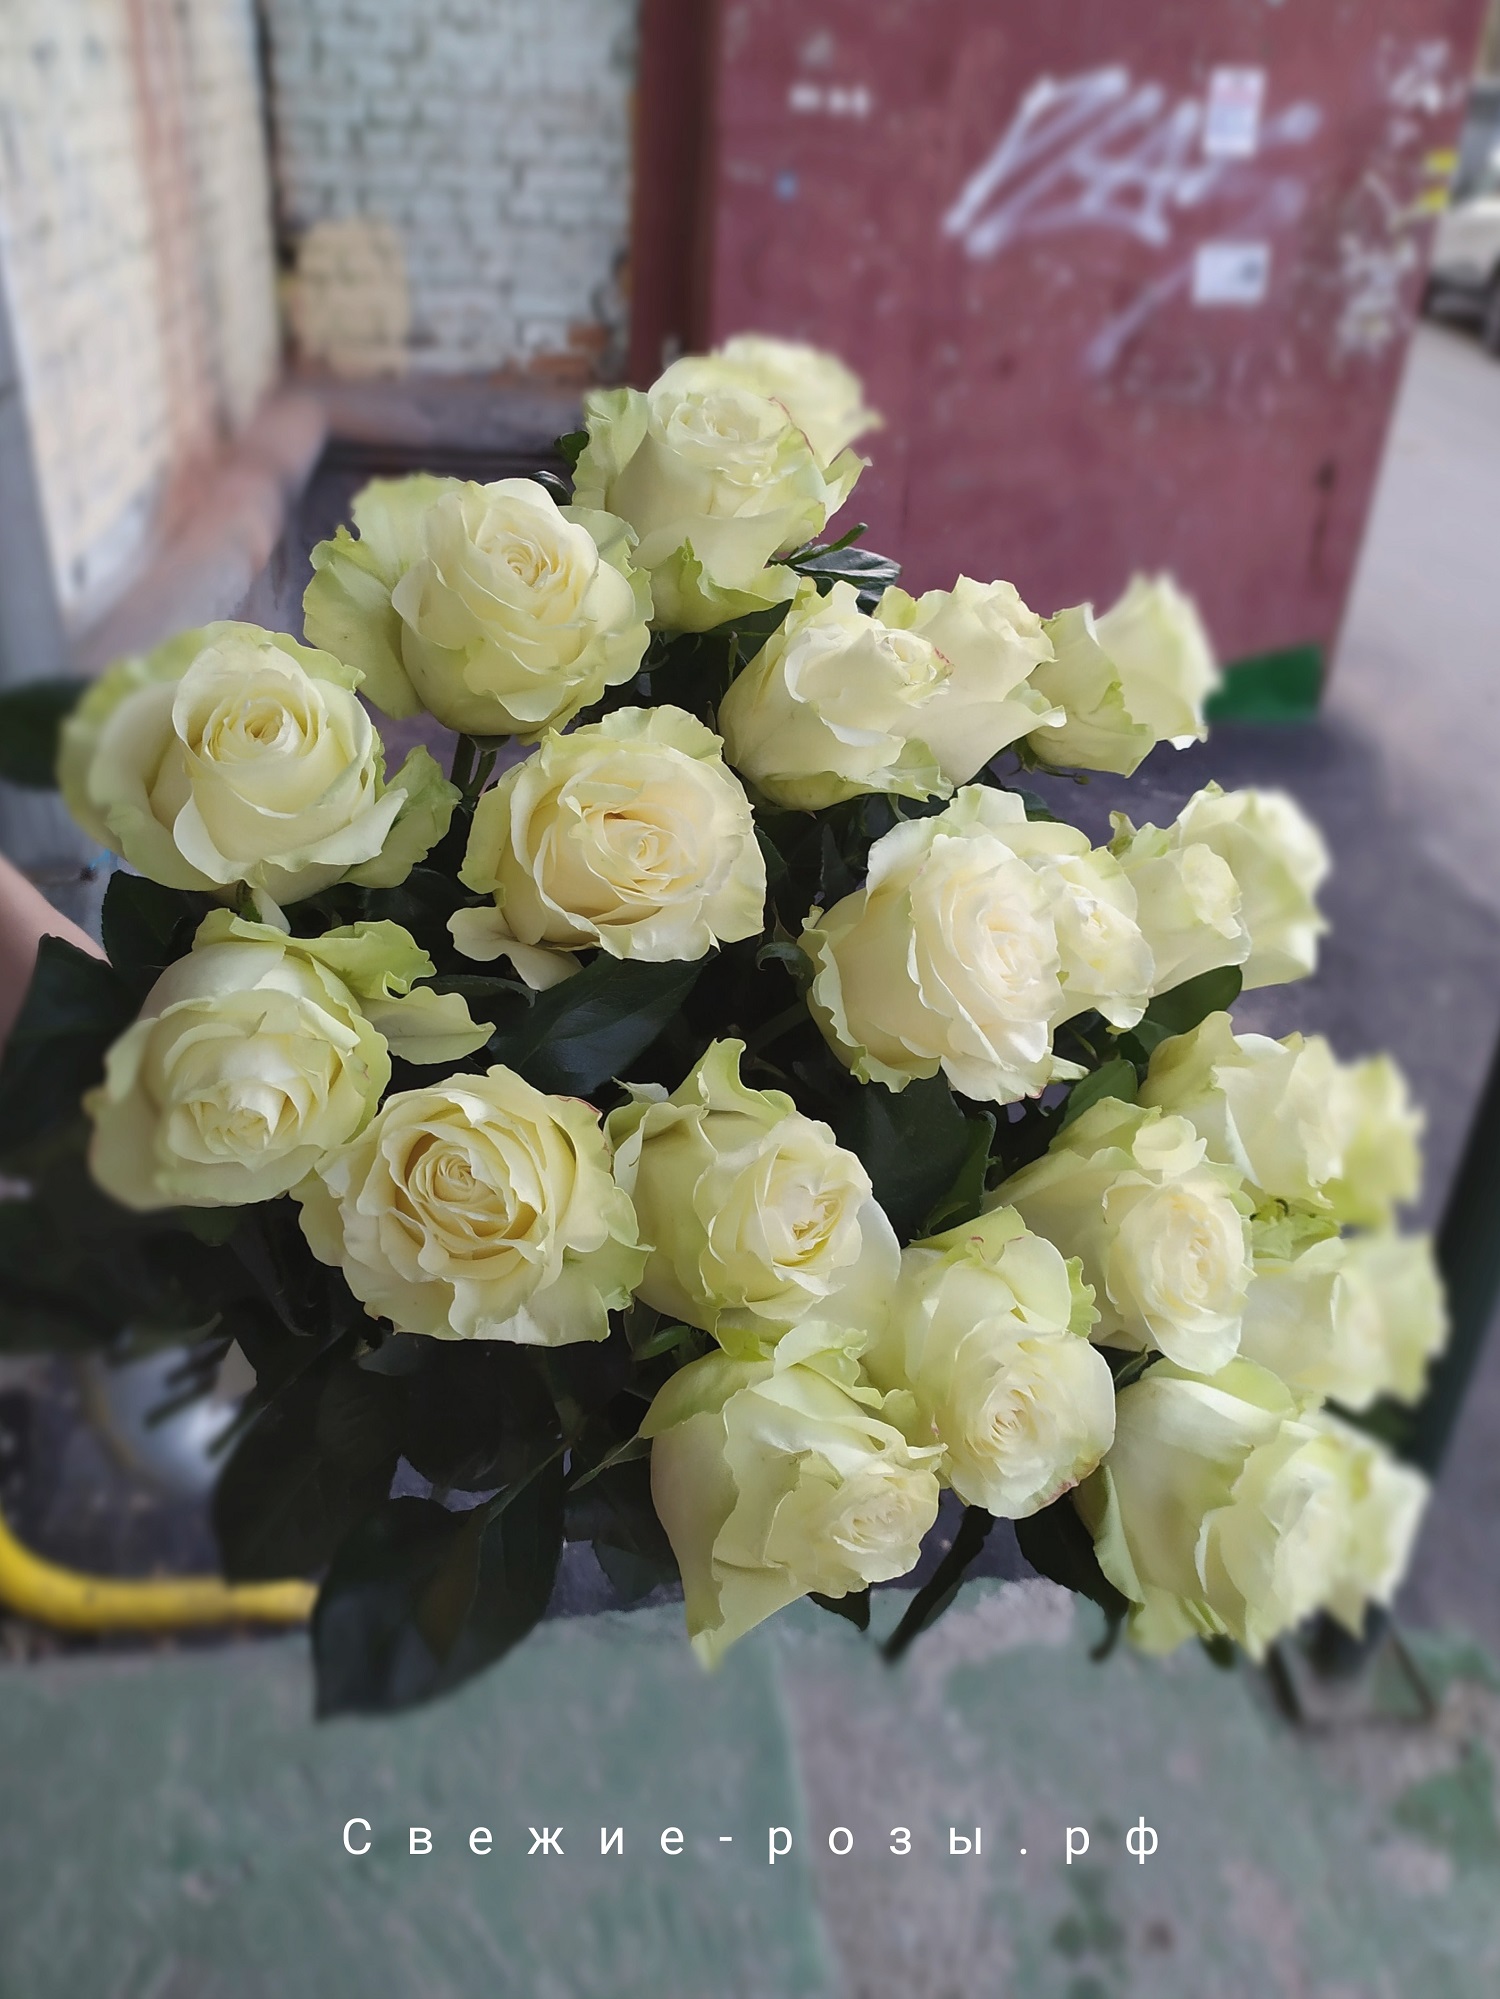 Свежие розы Пермь kupit svezhie belyie rozyi perm dostavka